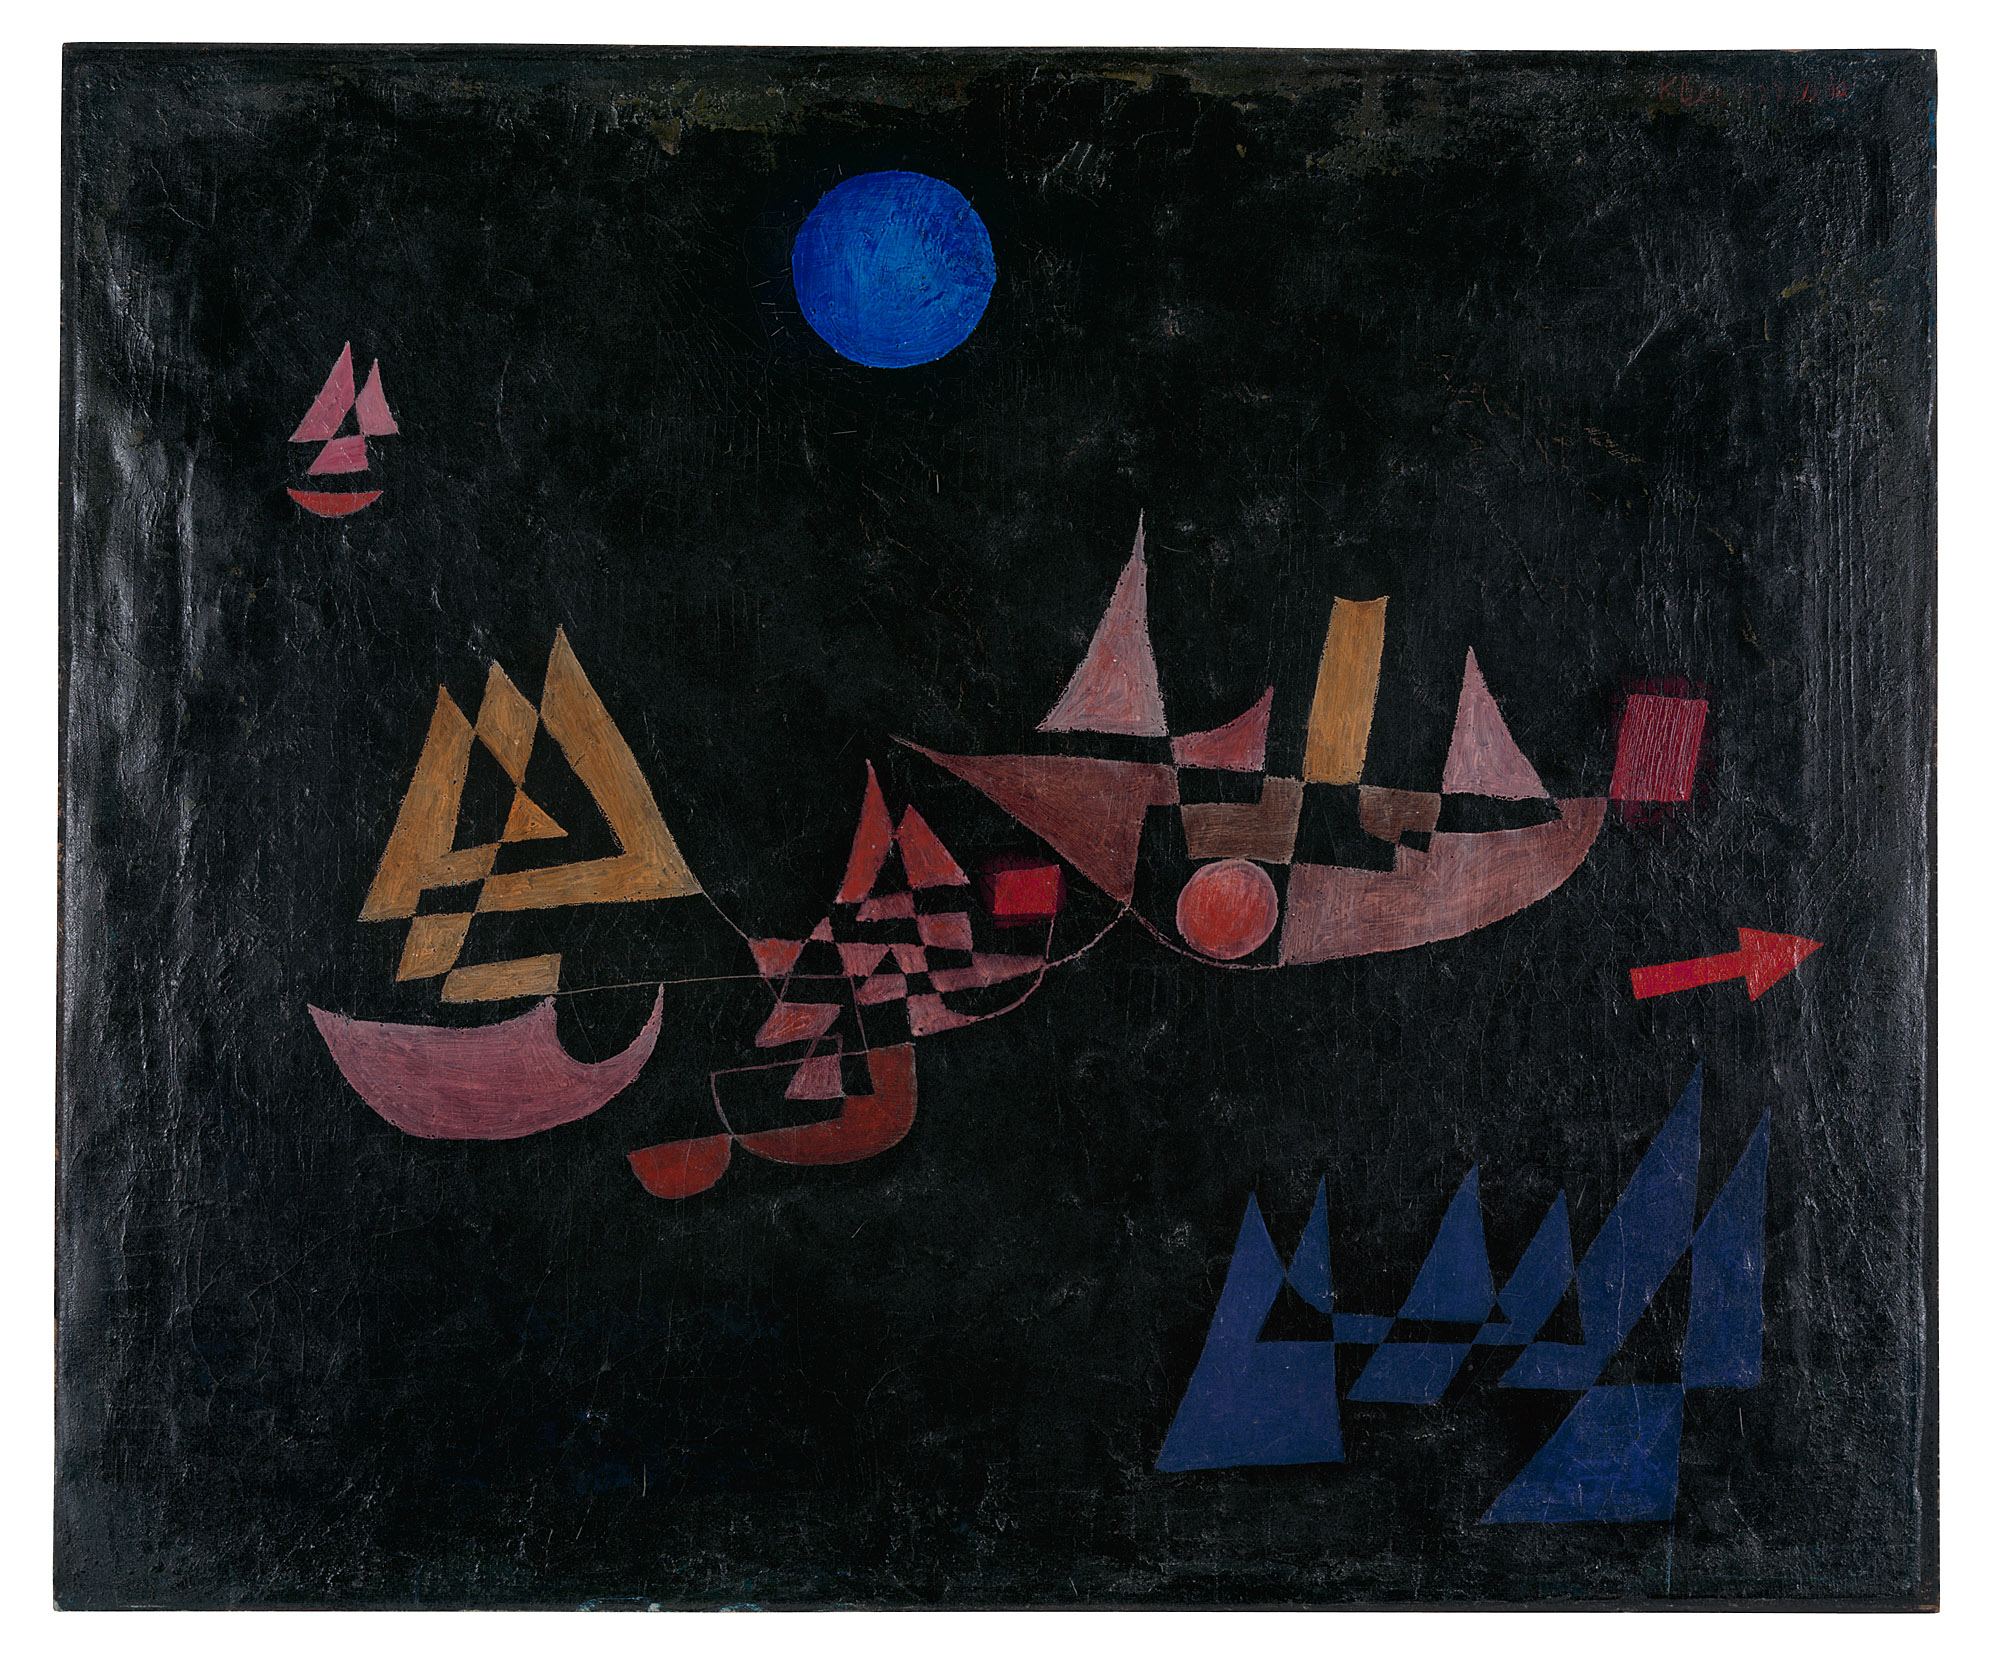 Wypłynięcie statków by Paul Klee - 1927 - 50 x 60 cm  